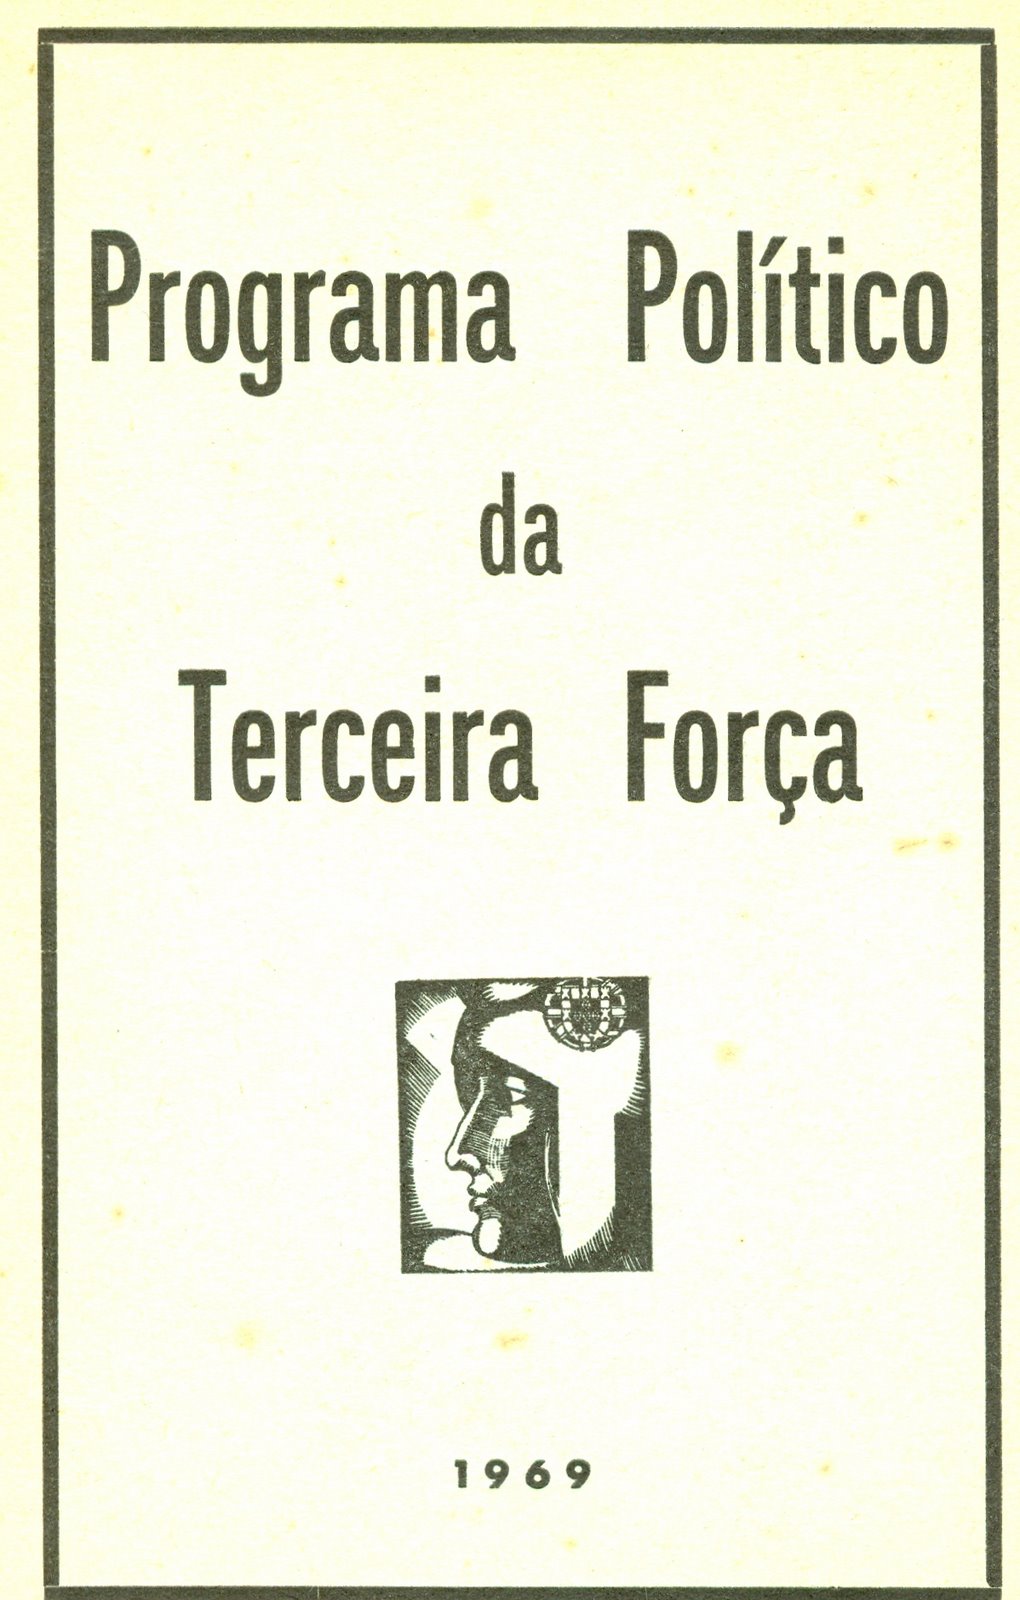 [Programa+politico+da+terceira+força,1969.jpg]